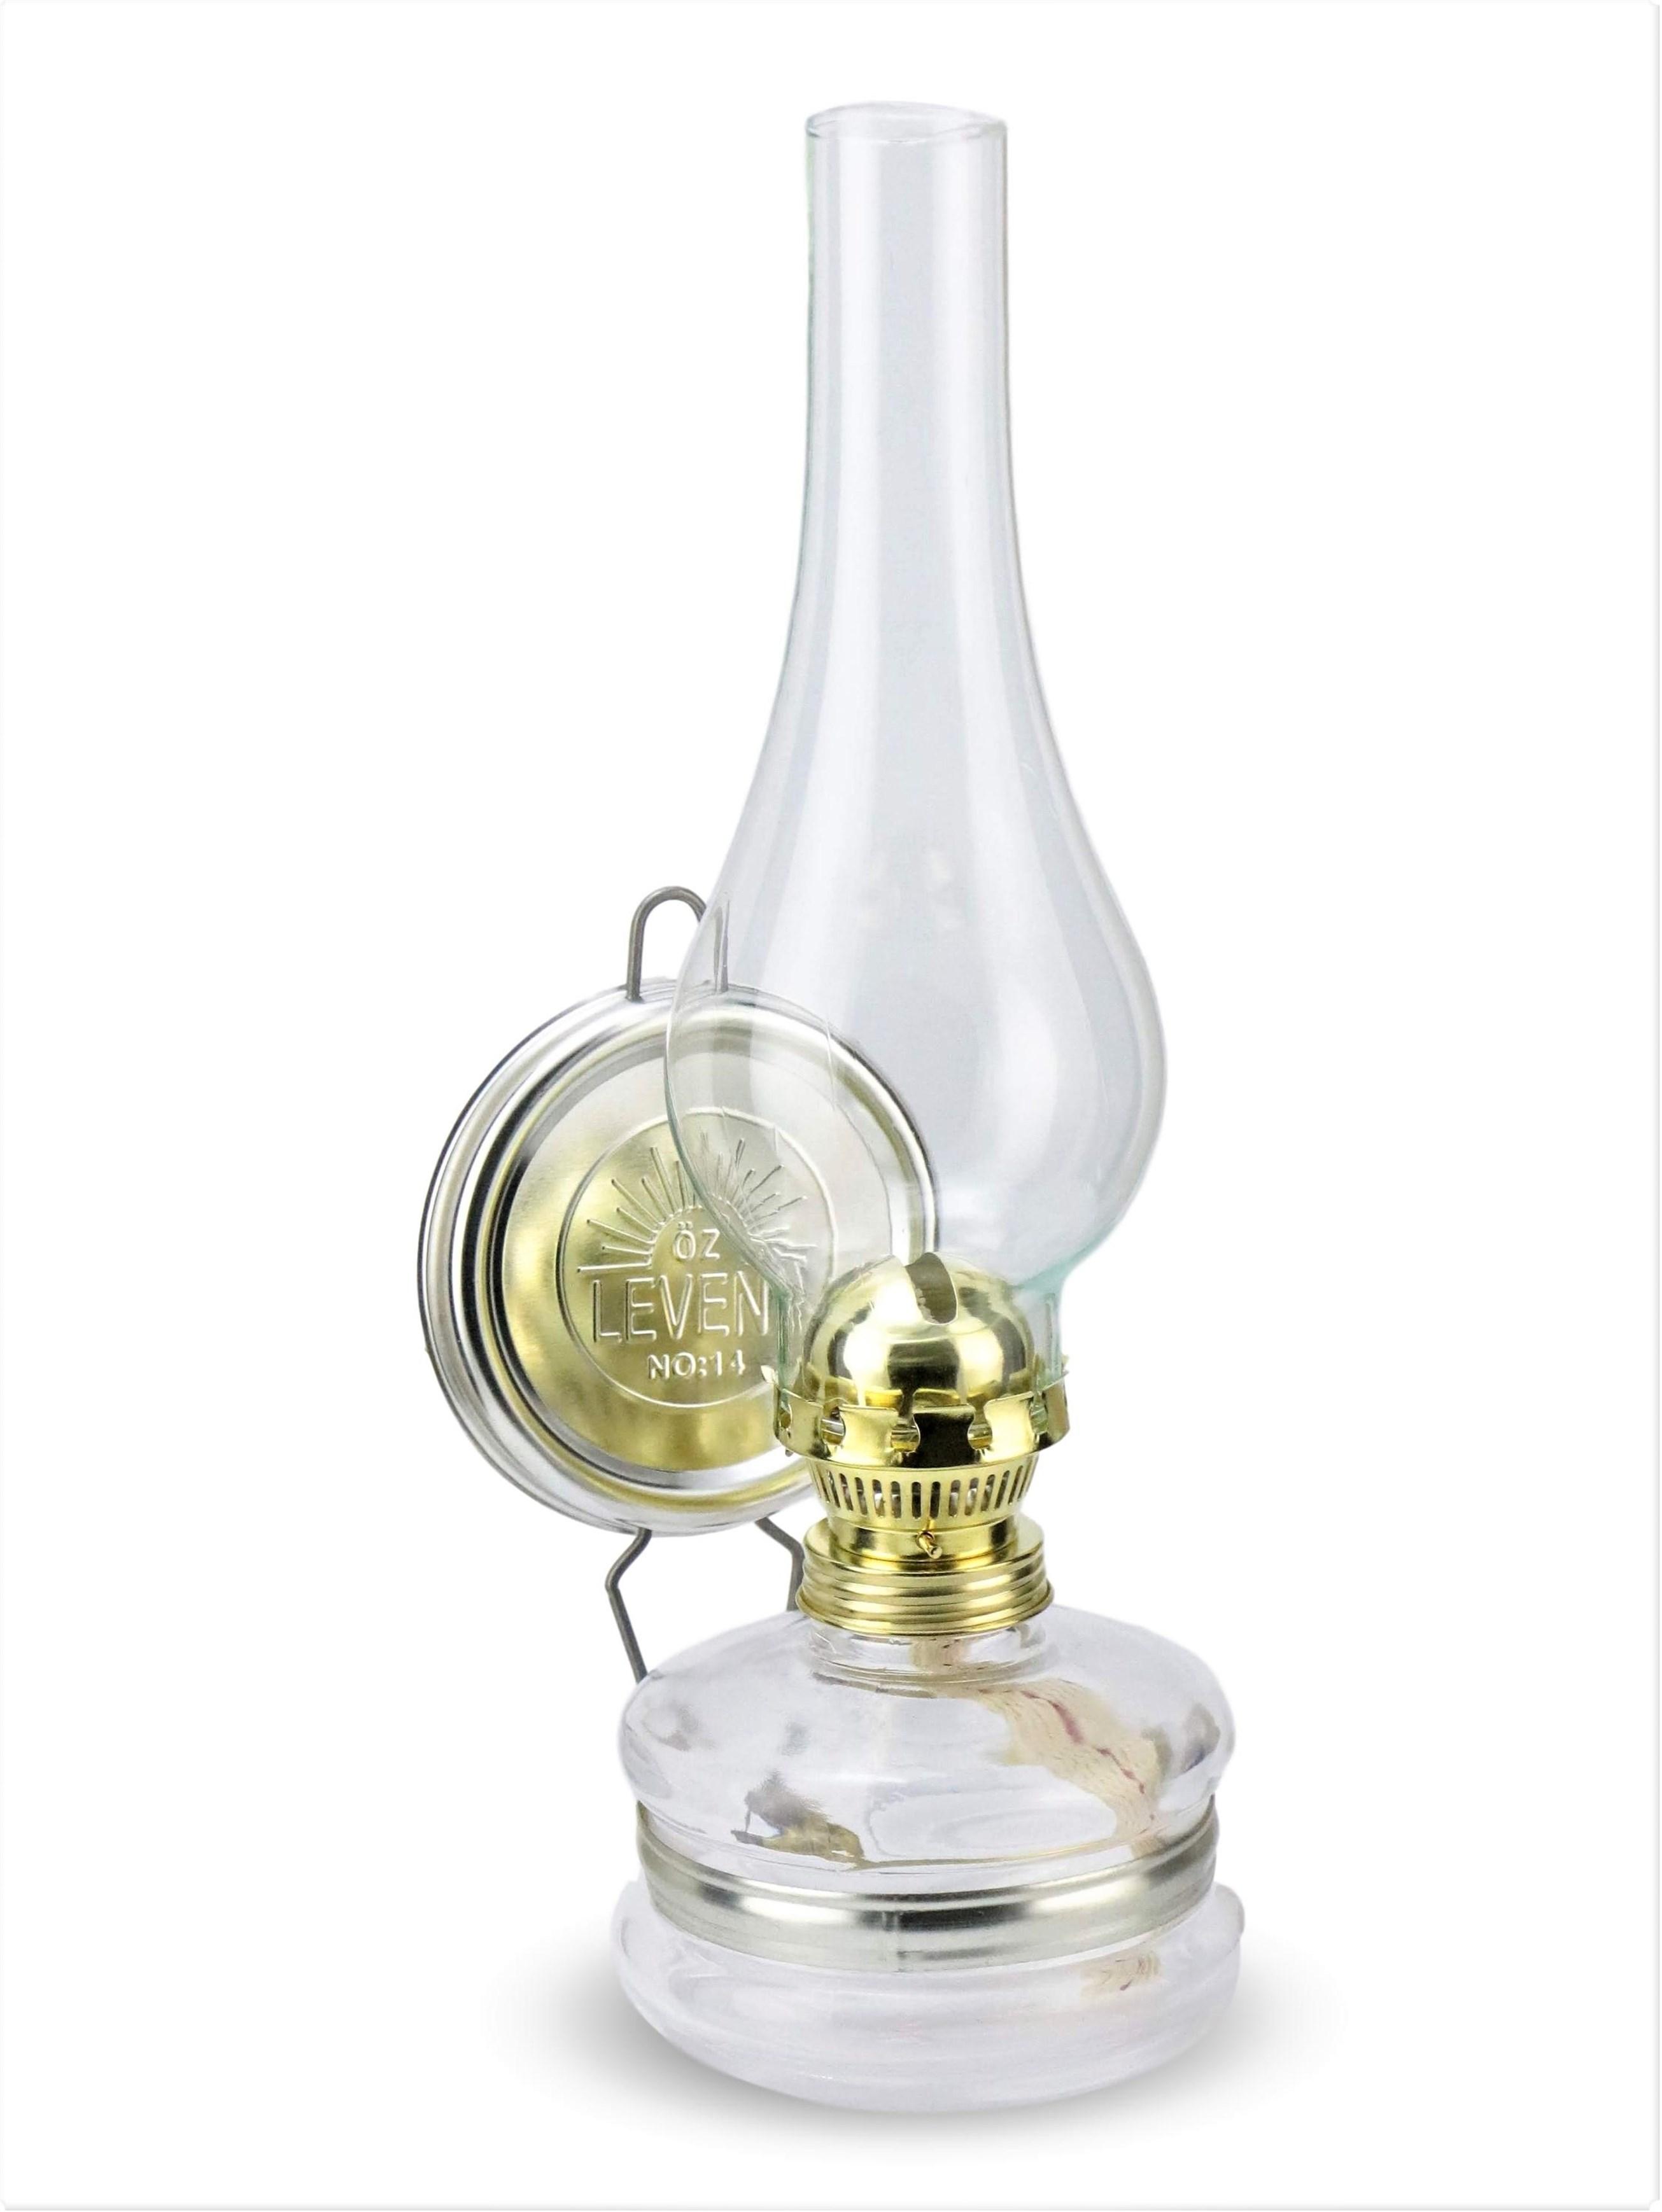 Изображение товара: SONAYCOPPER, керосиновая лампа, масляная лампа, стеклянная масляная лампа, настенная масляная лампа, декоративная лампа, Классическая газовая лампа